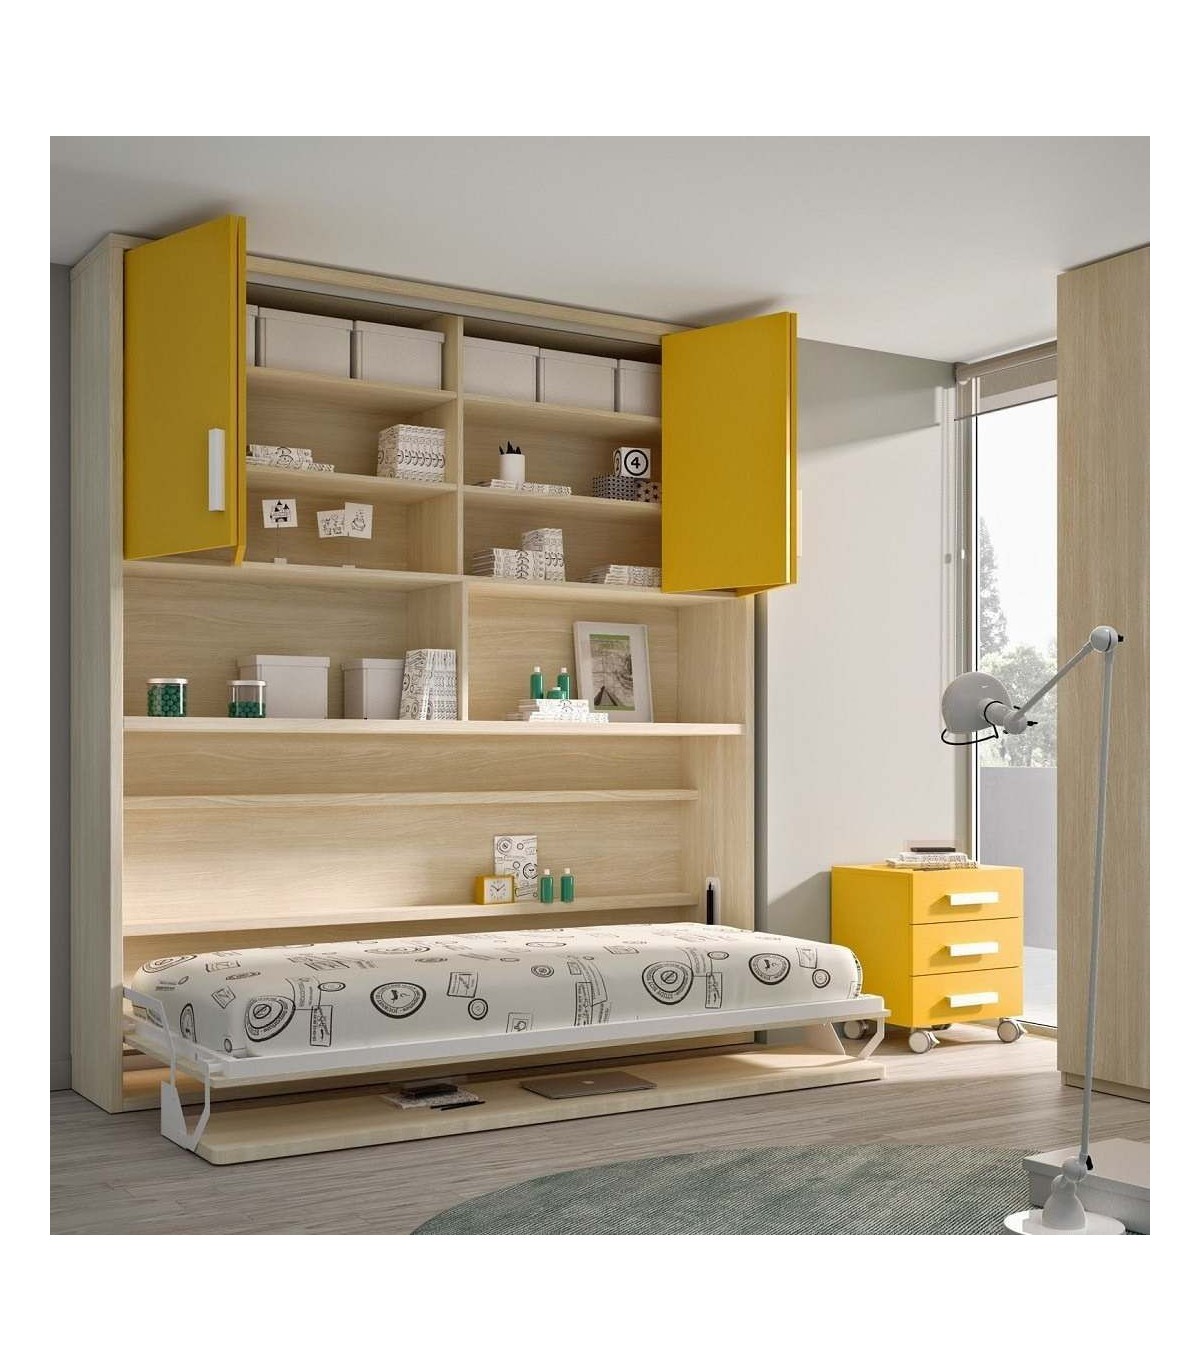 Cama abatible horizontal con escritorio plegable, armario y estantes.